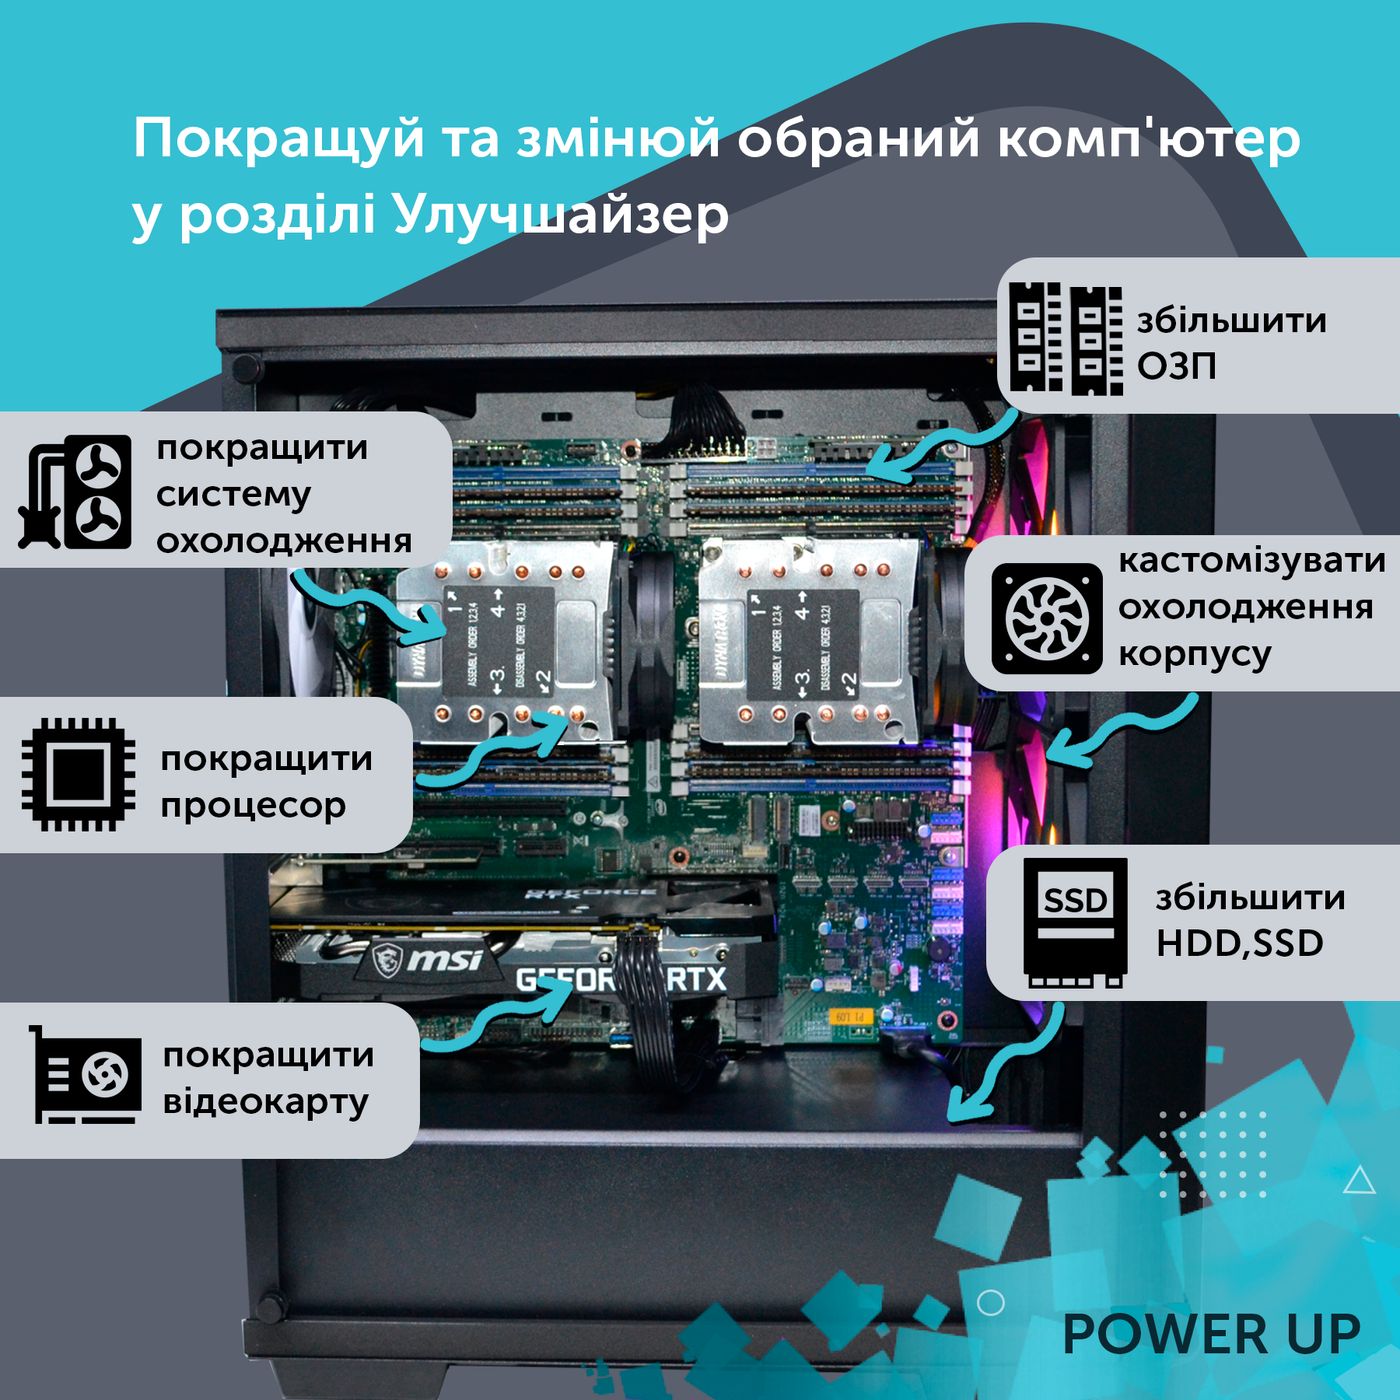 Робоча станція PowerUp Desktop #199 Core i9 13900K/64 GB/SSD 1TB/GeForce RTX 4080 16GB